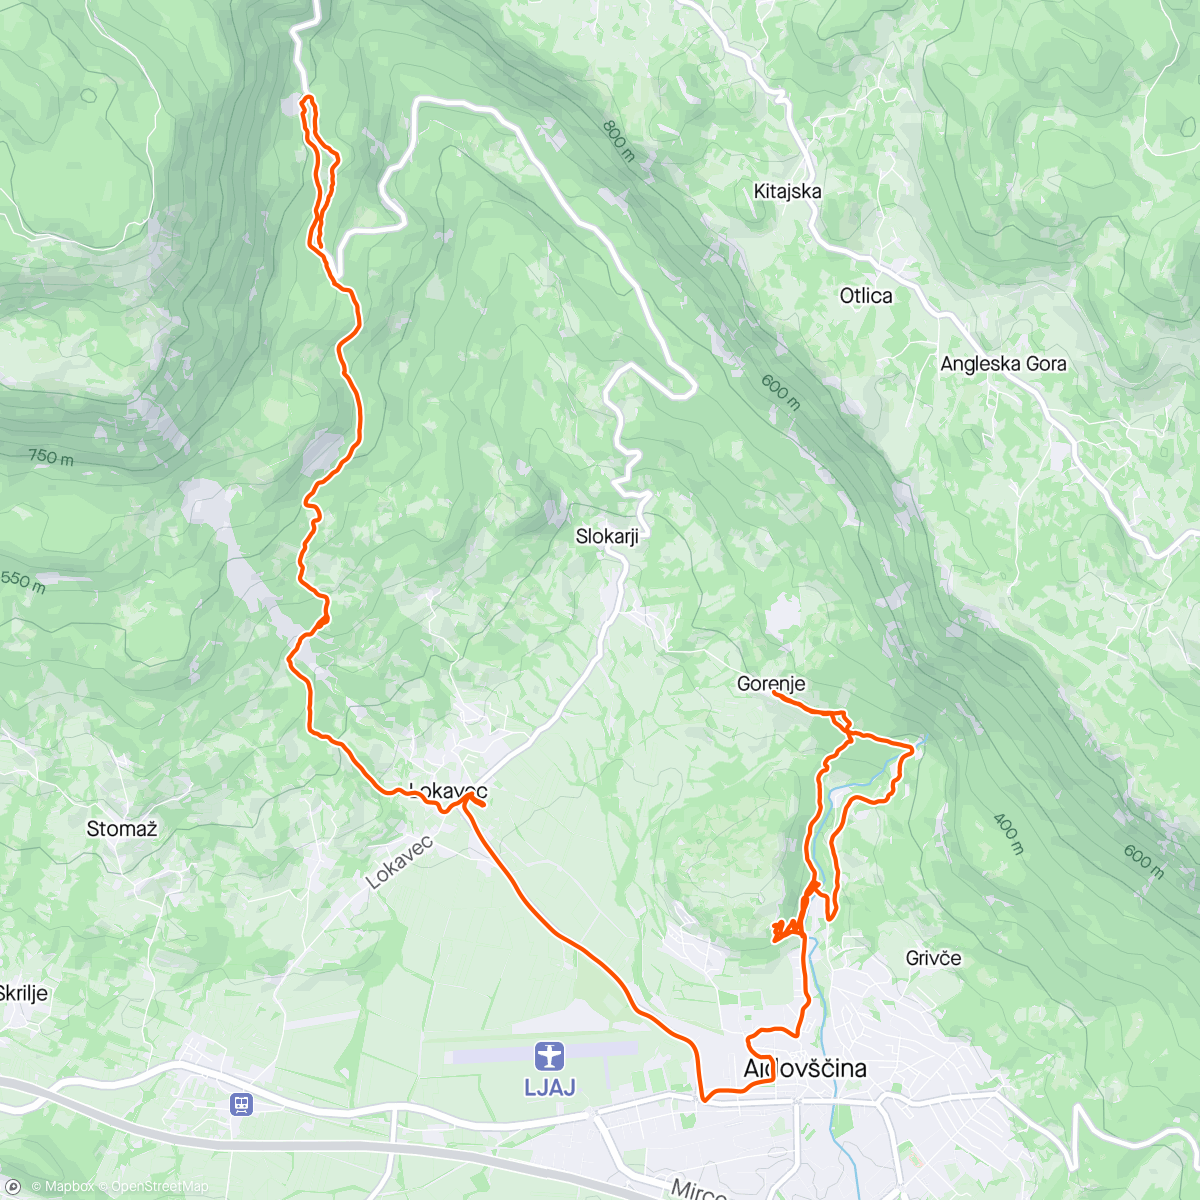 Mapa de la actividad, Oggi trasferta in Slovenia a vedere dei trail nuovi…
In ottima compagnia di GIANCARL e David (piacevole scoperta)…
#orbea #unno #norco #mtb #enduro #trail #pump #pumptrack